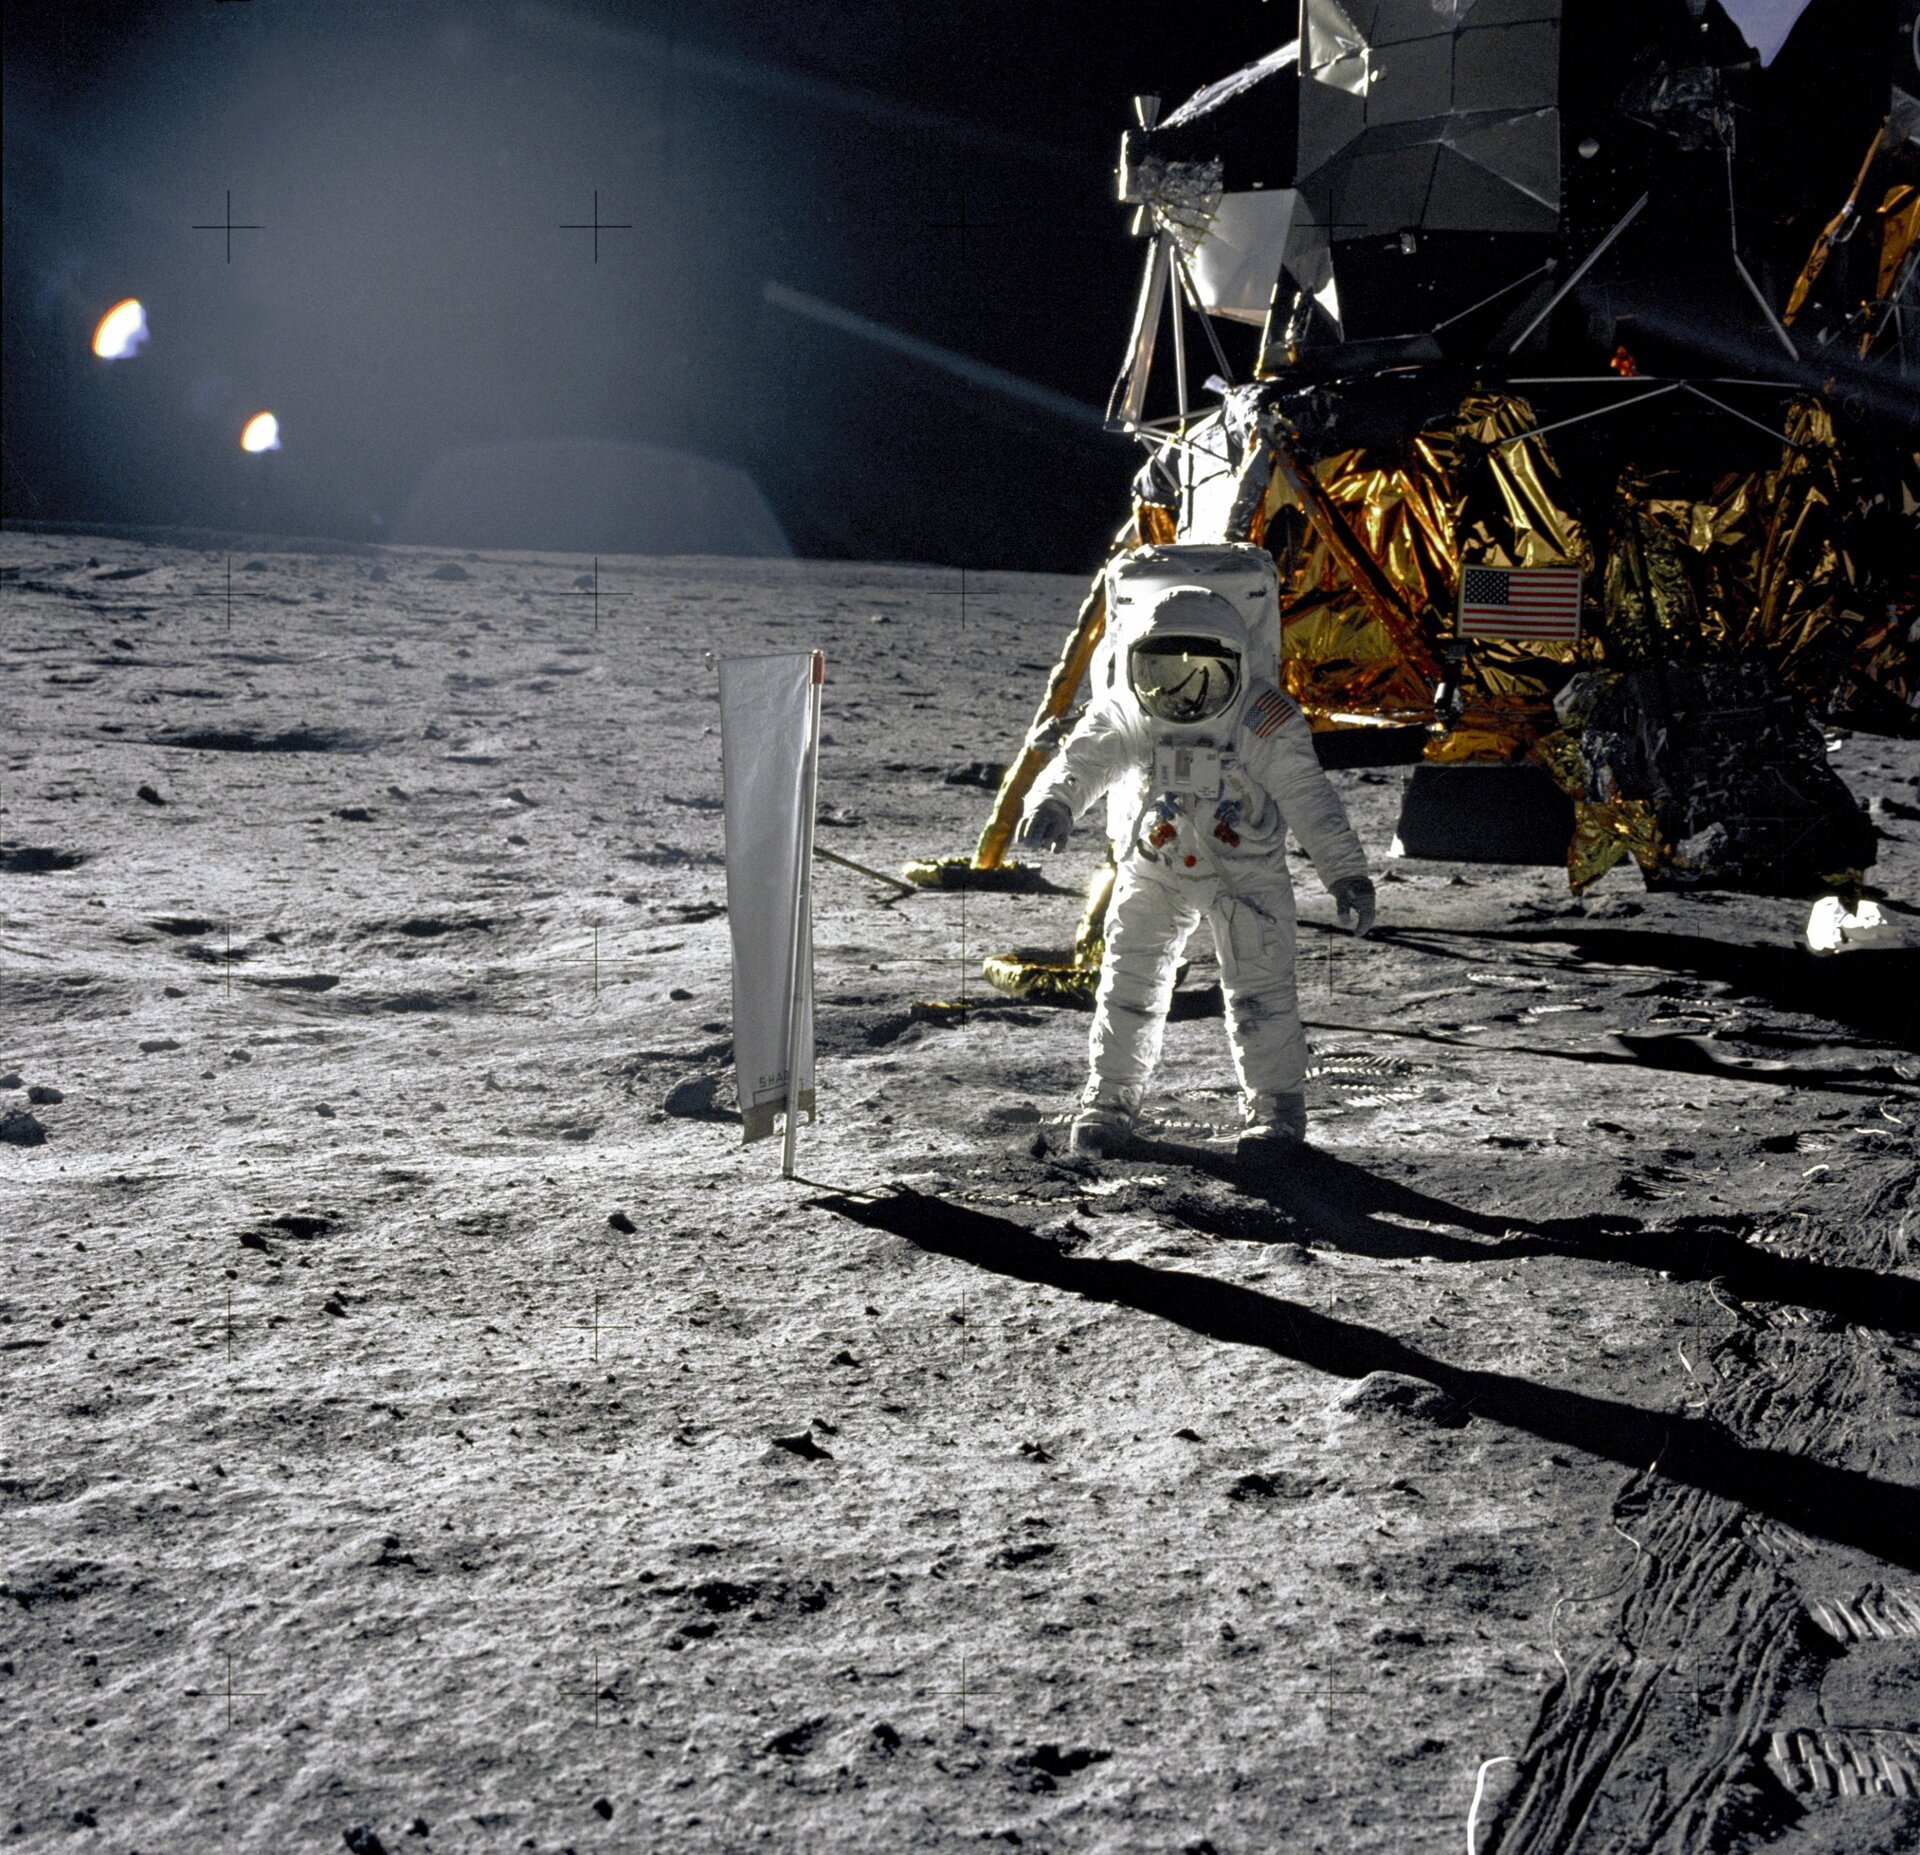 L’astronaute Buzz Aldrin sur la Lune avec, à sa droite, la feuille d’aluminium suisse.